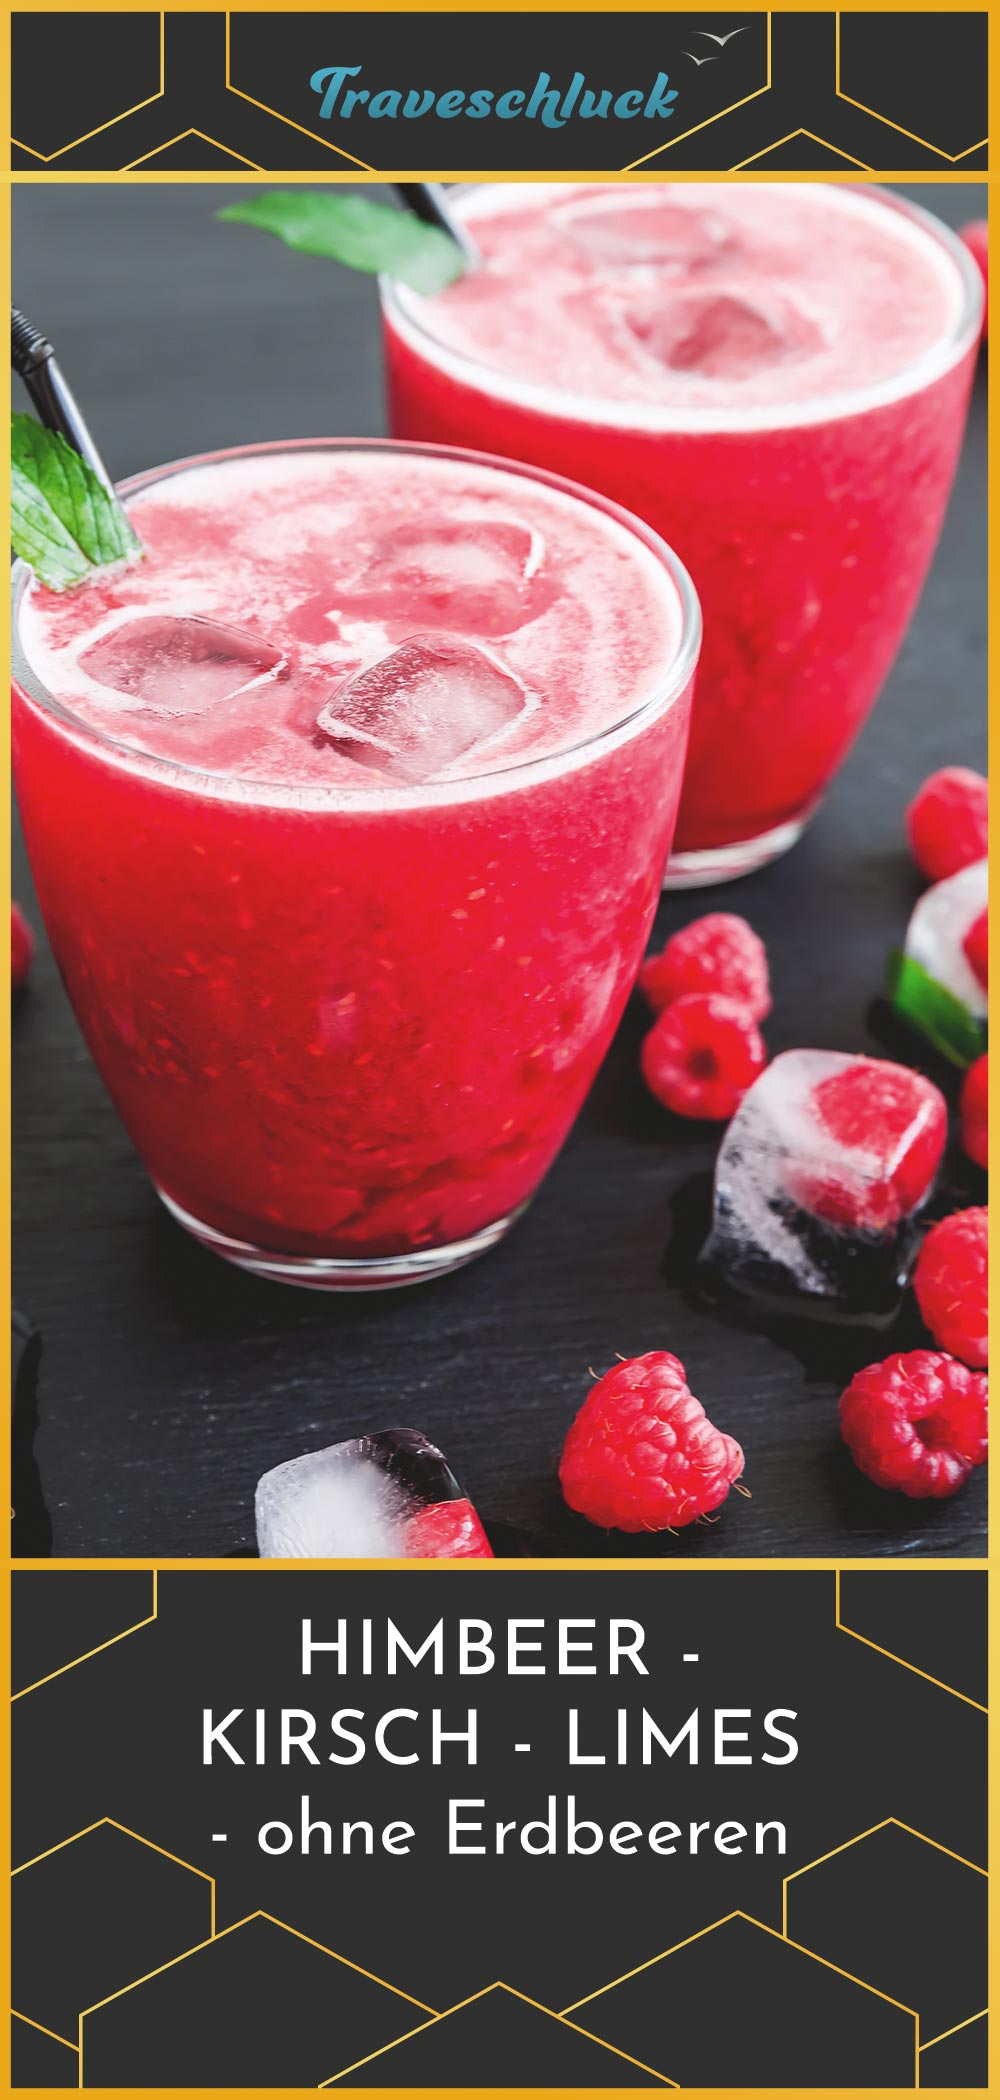 Dieser Himbeer-Kirsch-Limes mit Traveschluck Kirschlikör ist die aufregende Variante des allseits bekannten Erdbeer-Limes. Für das gleiche leichte Sommergefühl beim Trinken.